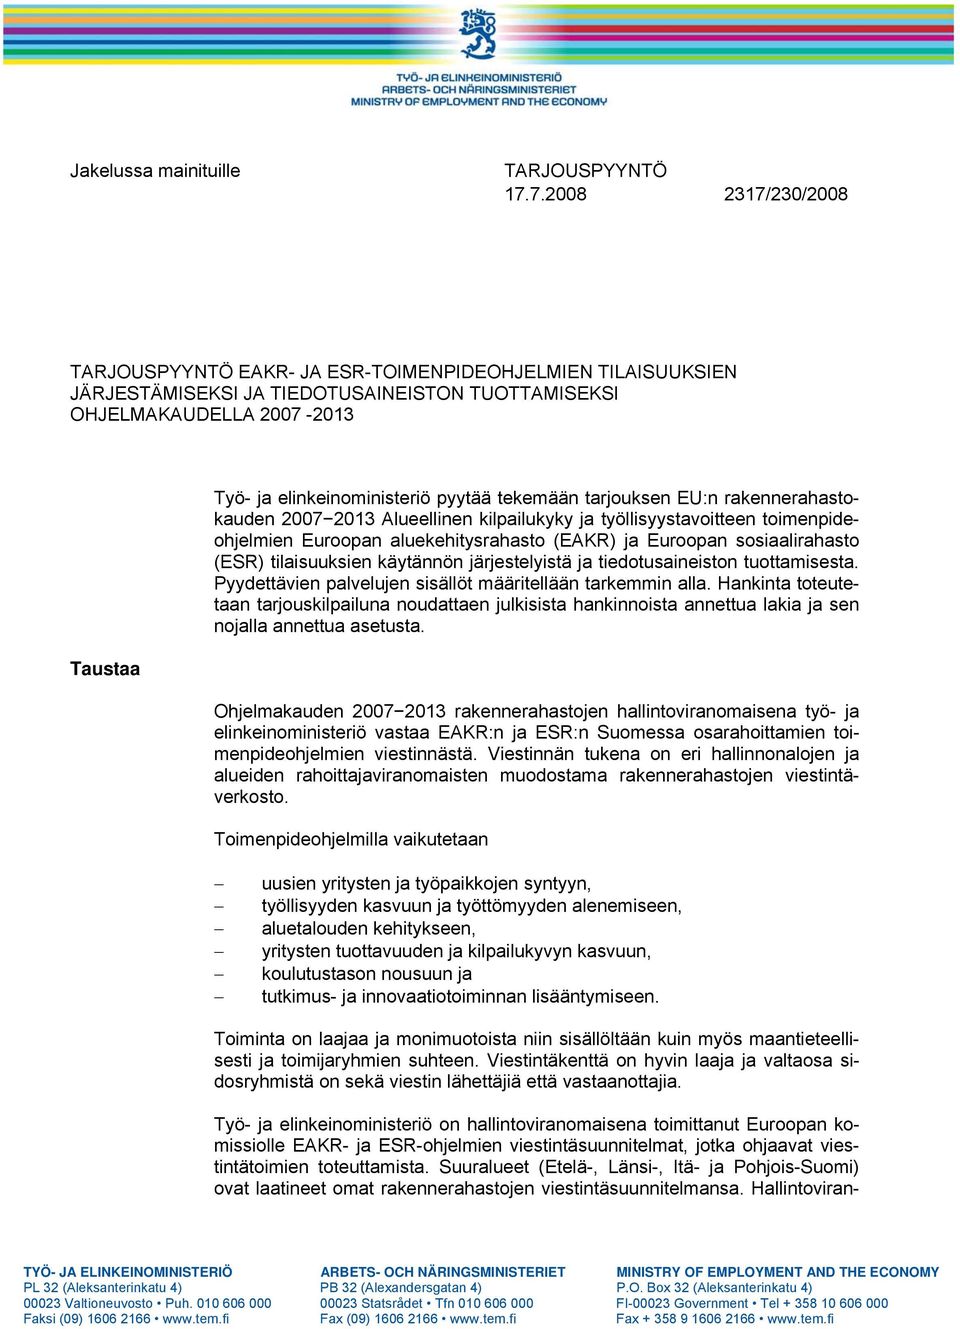 tarjouksen EU:n rakennerahastokauden 20072013 Alueellinen kilpailukyky ja työllisyystavoitteen toimenpideohjelmien Euroopan aluekehitysrahasto (EAKR) ja Euroopan sosiaalirahasto (ESR) tilaisuuksien